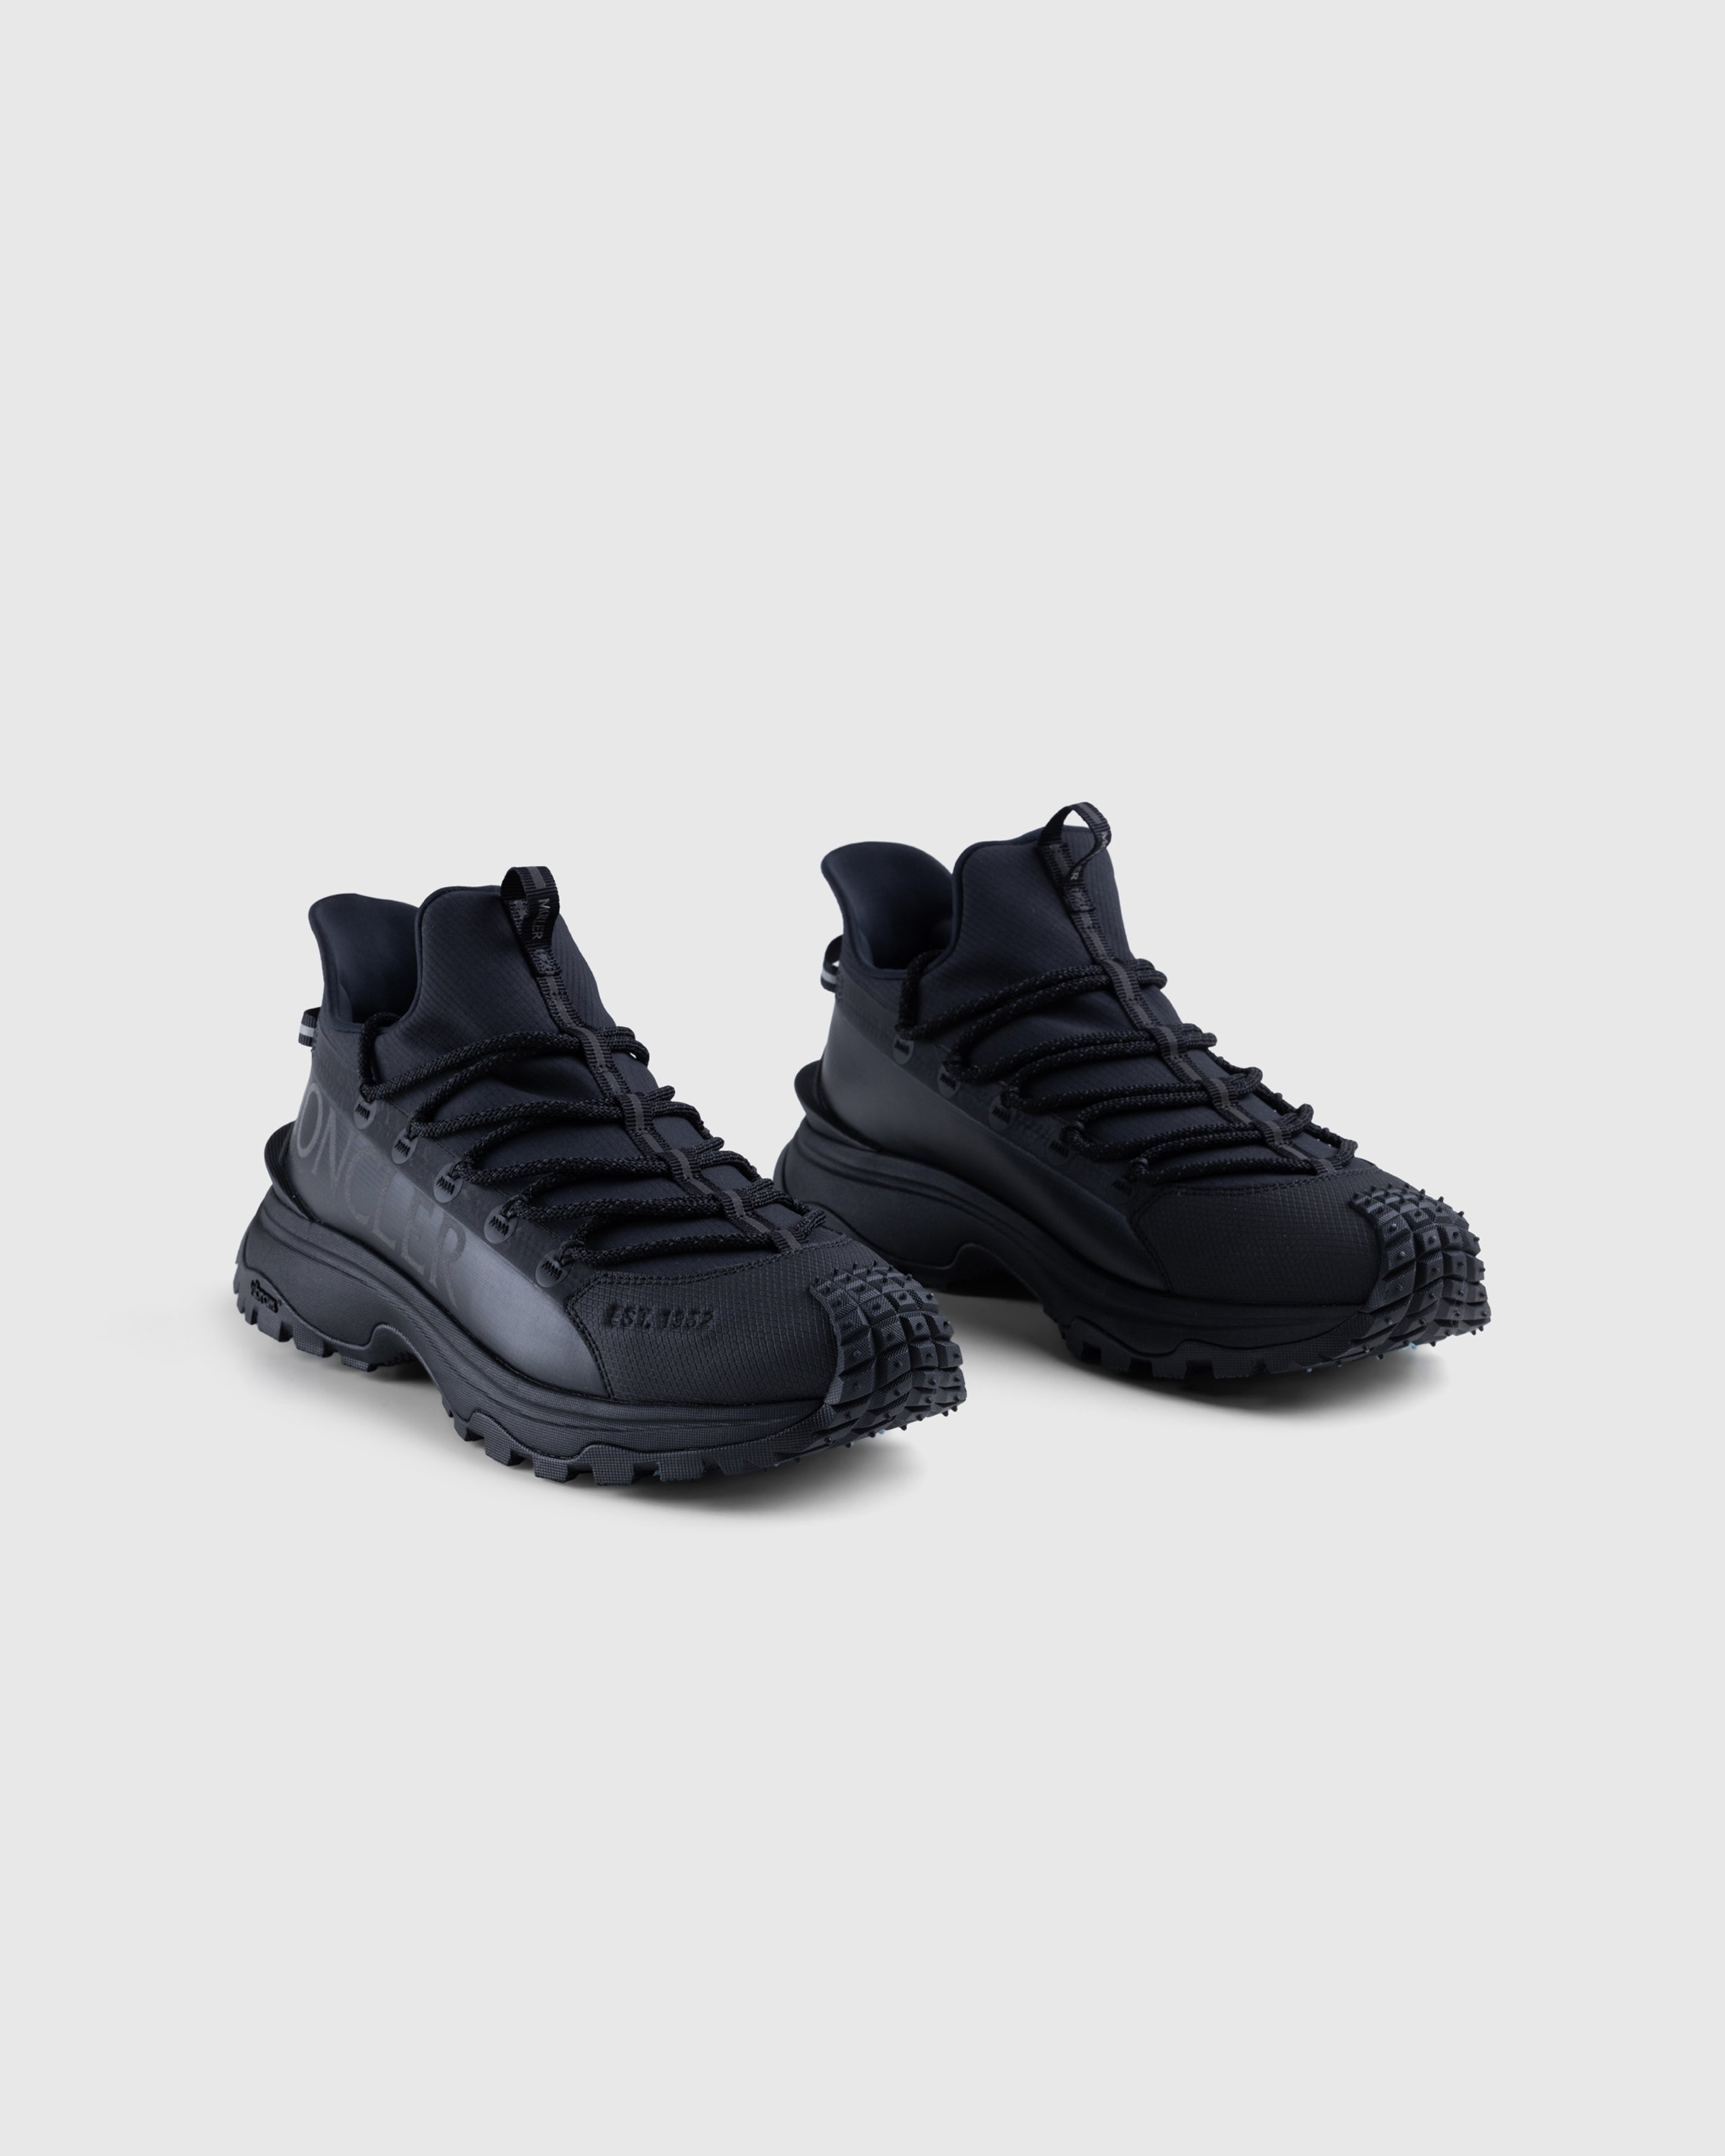 Moncler - Trailgrip Lite 2 Sneakers Black - Footwear - Black - Image 3